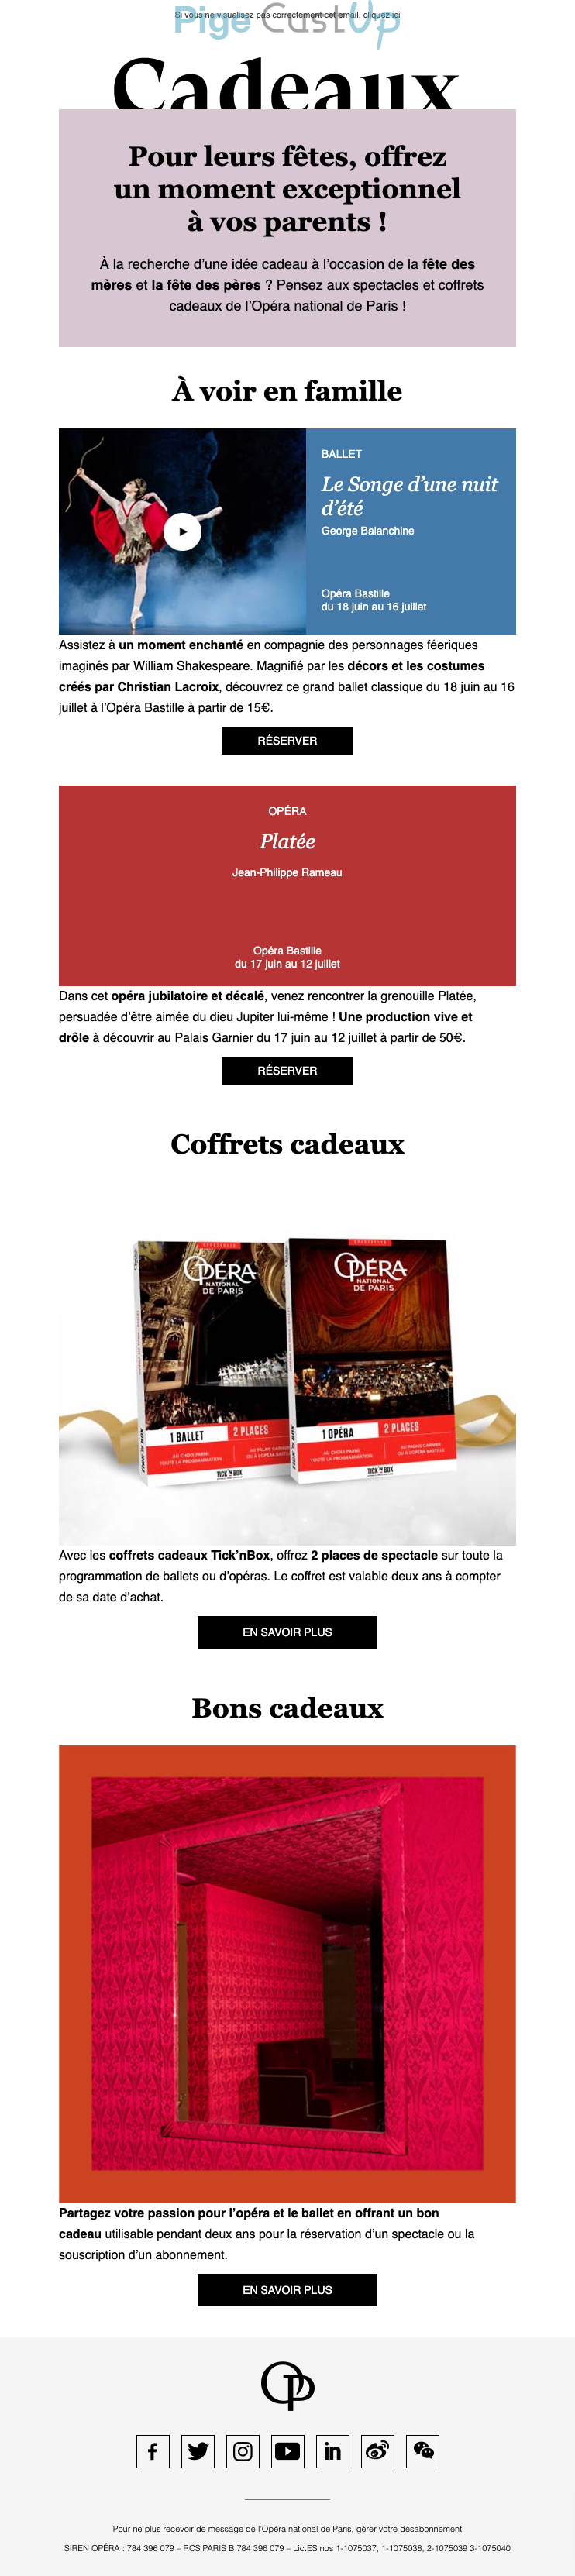 Exemple de Type de media  e-mailing - Opéra de Paris - Marketing relationnel - Calendaire (Noël, St valentin, Vœux, …)